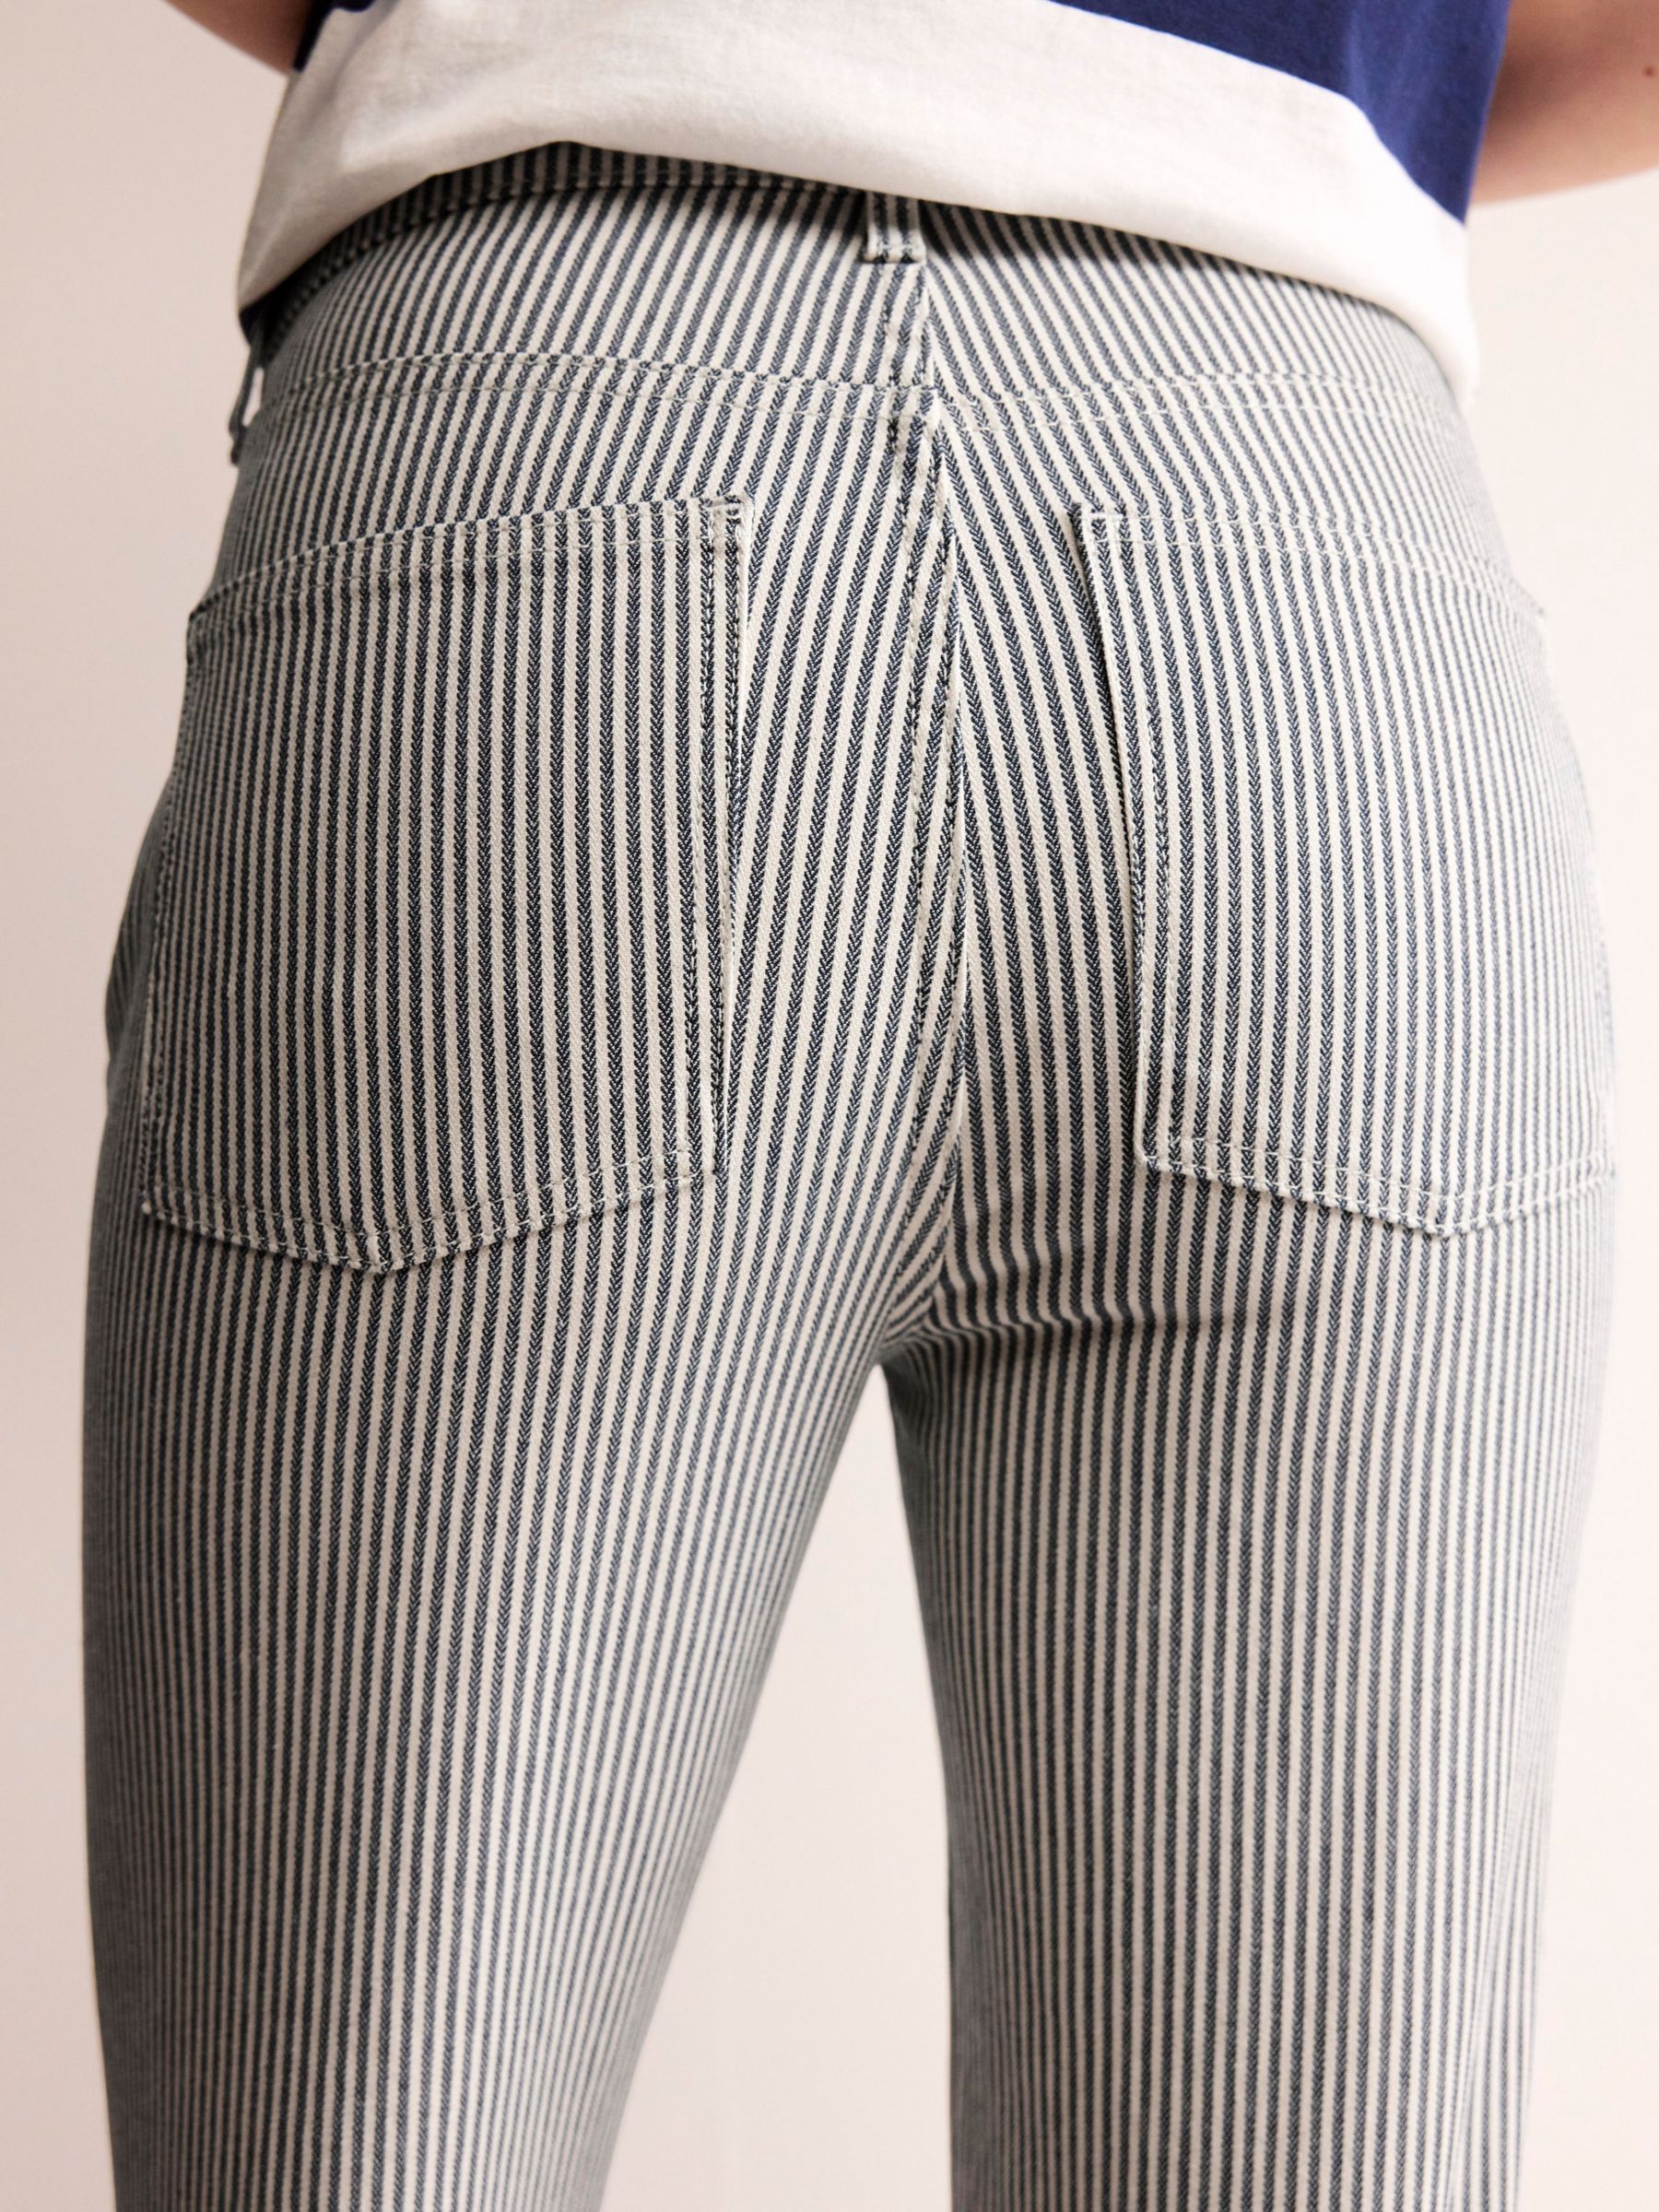 Boden Mid Rise Slim Leg Stripe Jeans, White/Black, W27/L32